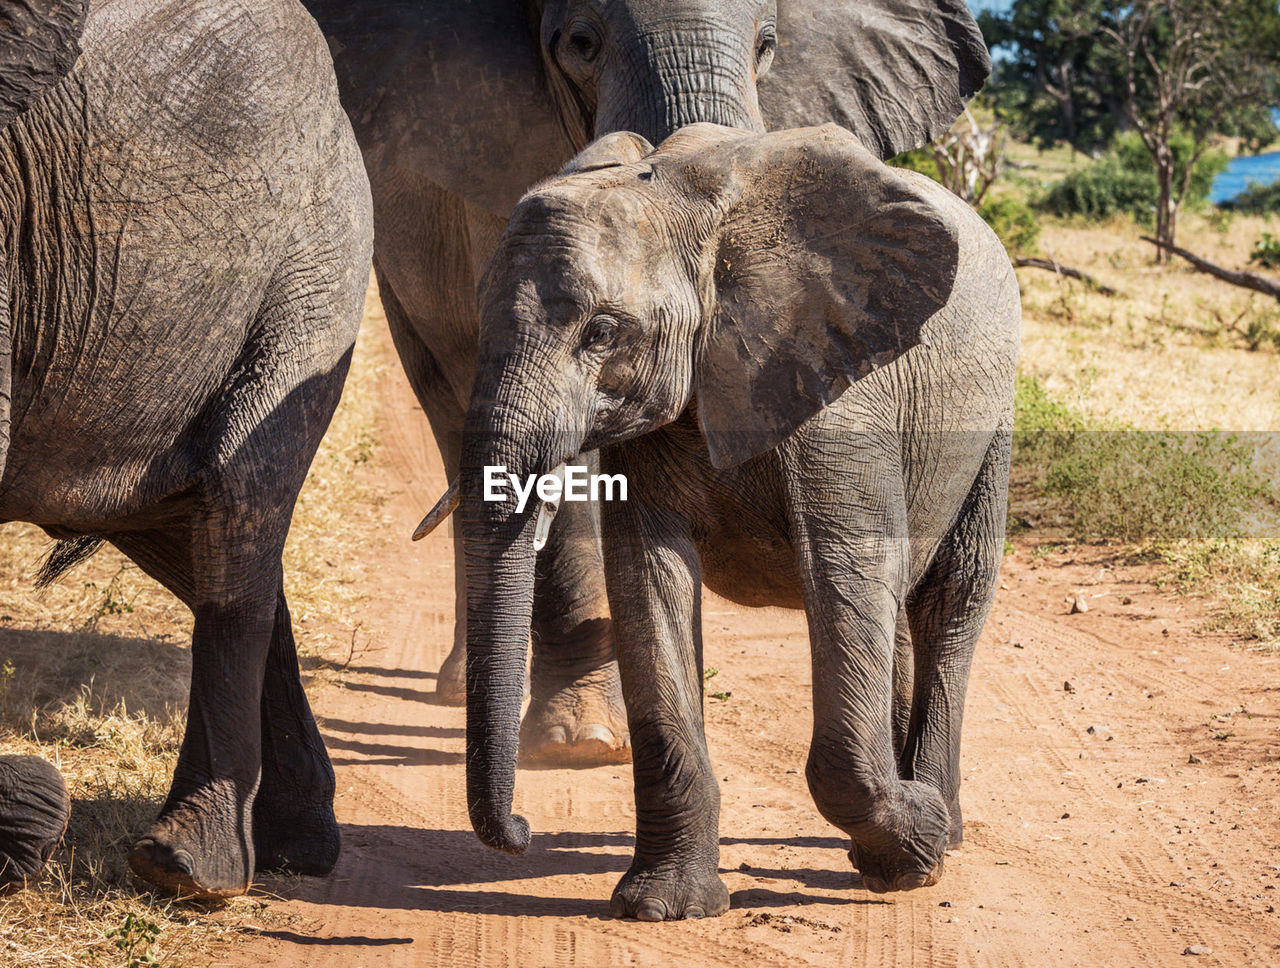 Elephants drinking water